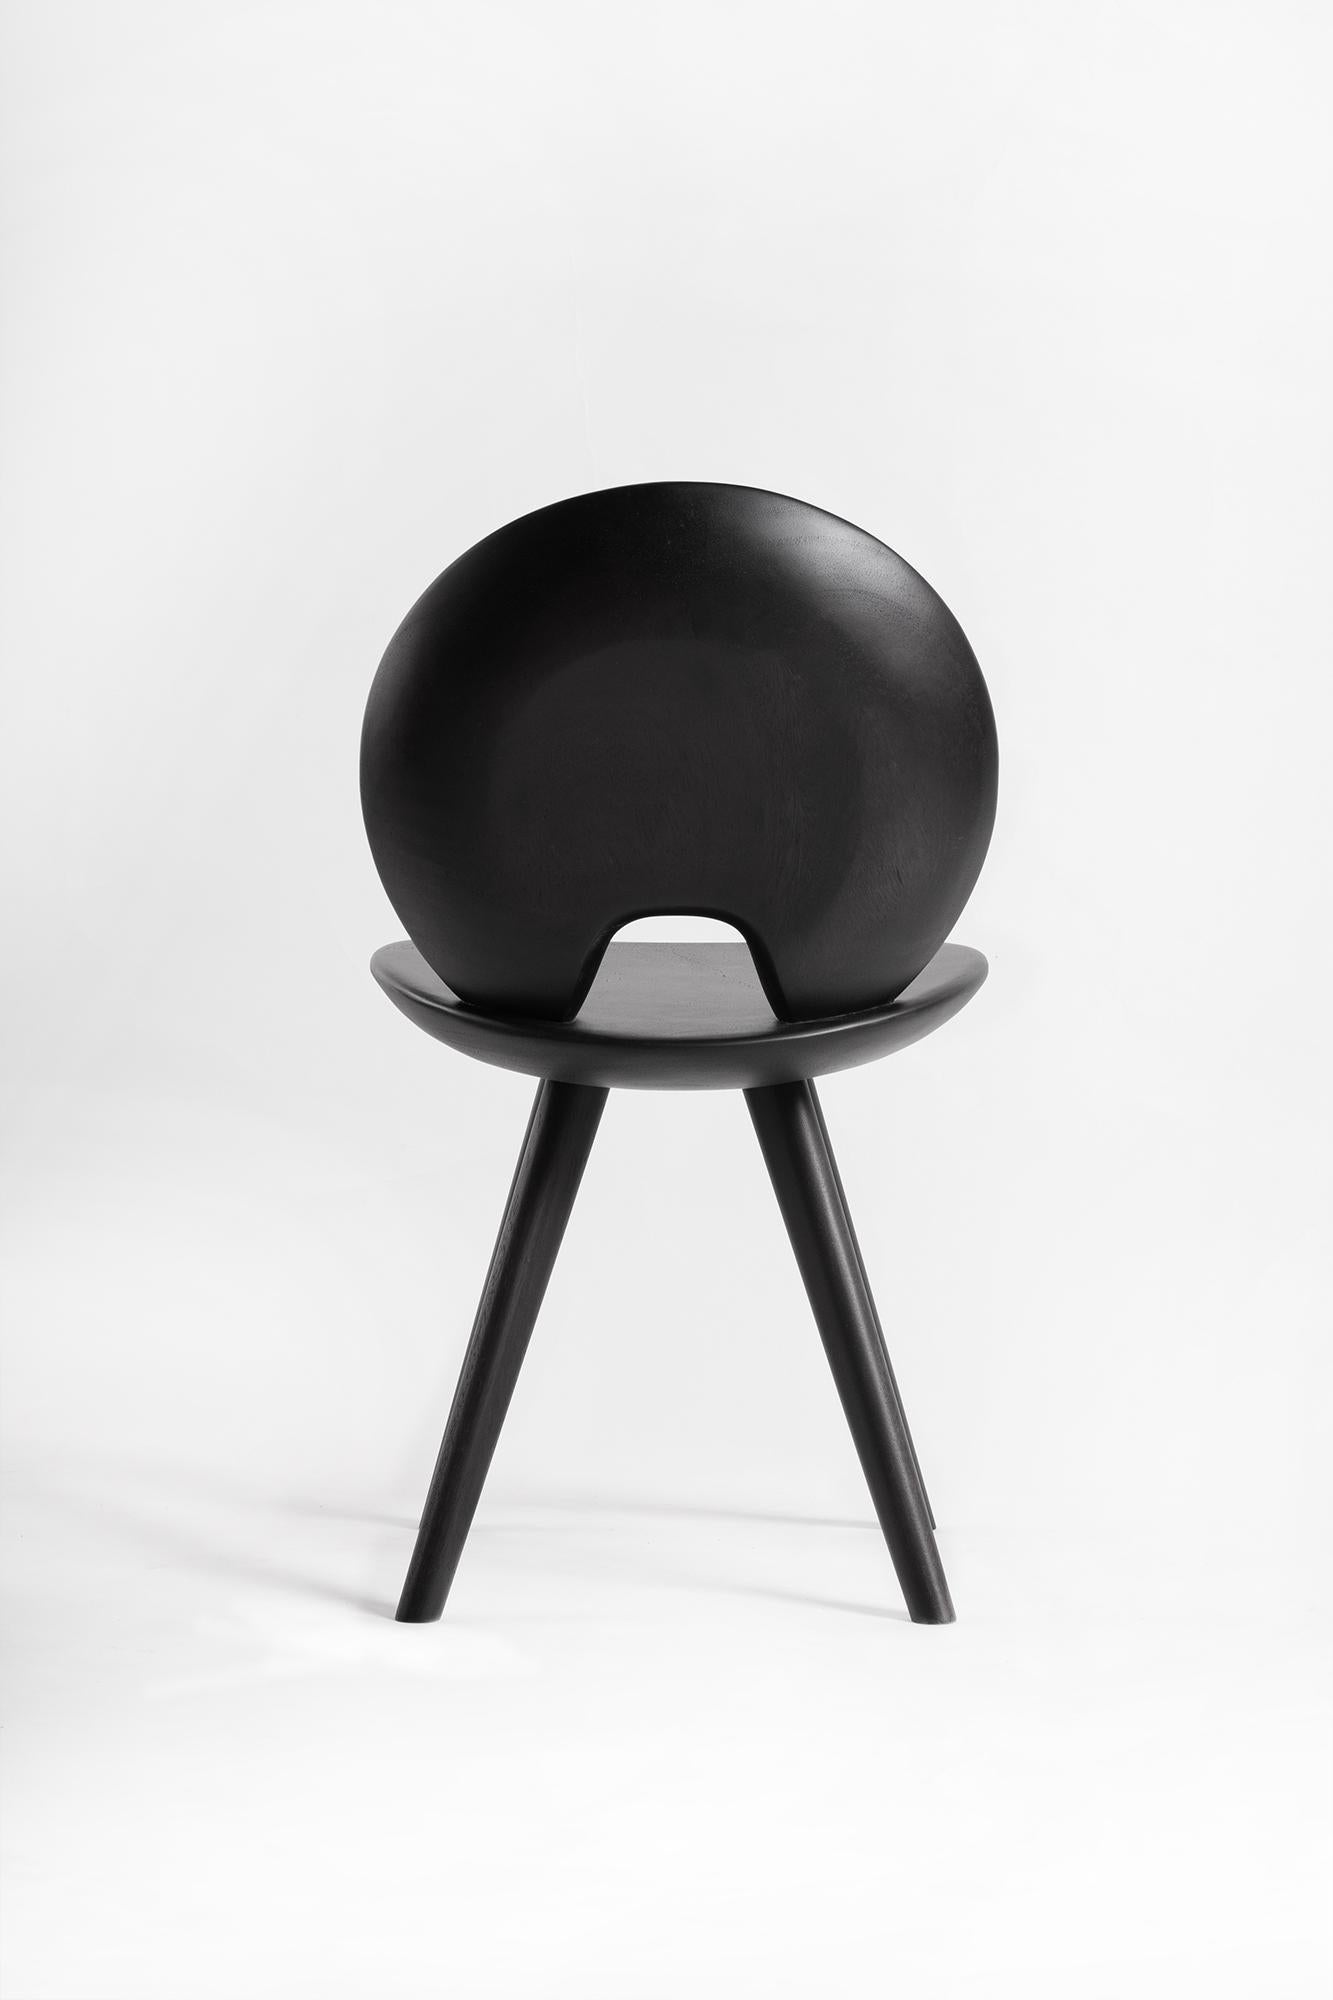 Thai Lunar Chair, Charcoal Black Acacia Wood For Sale